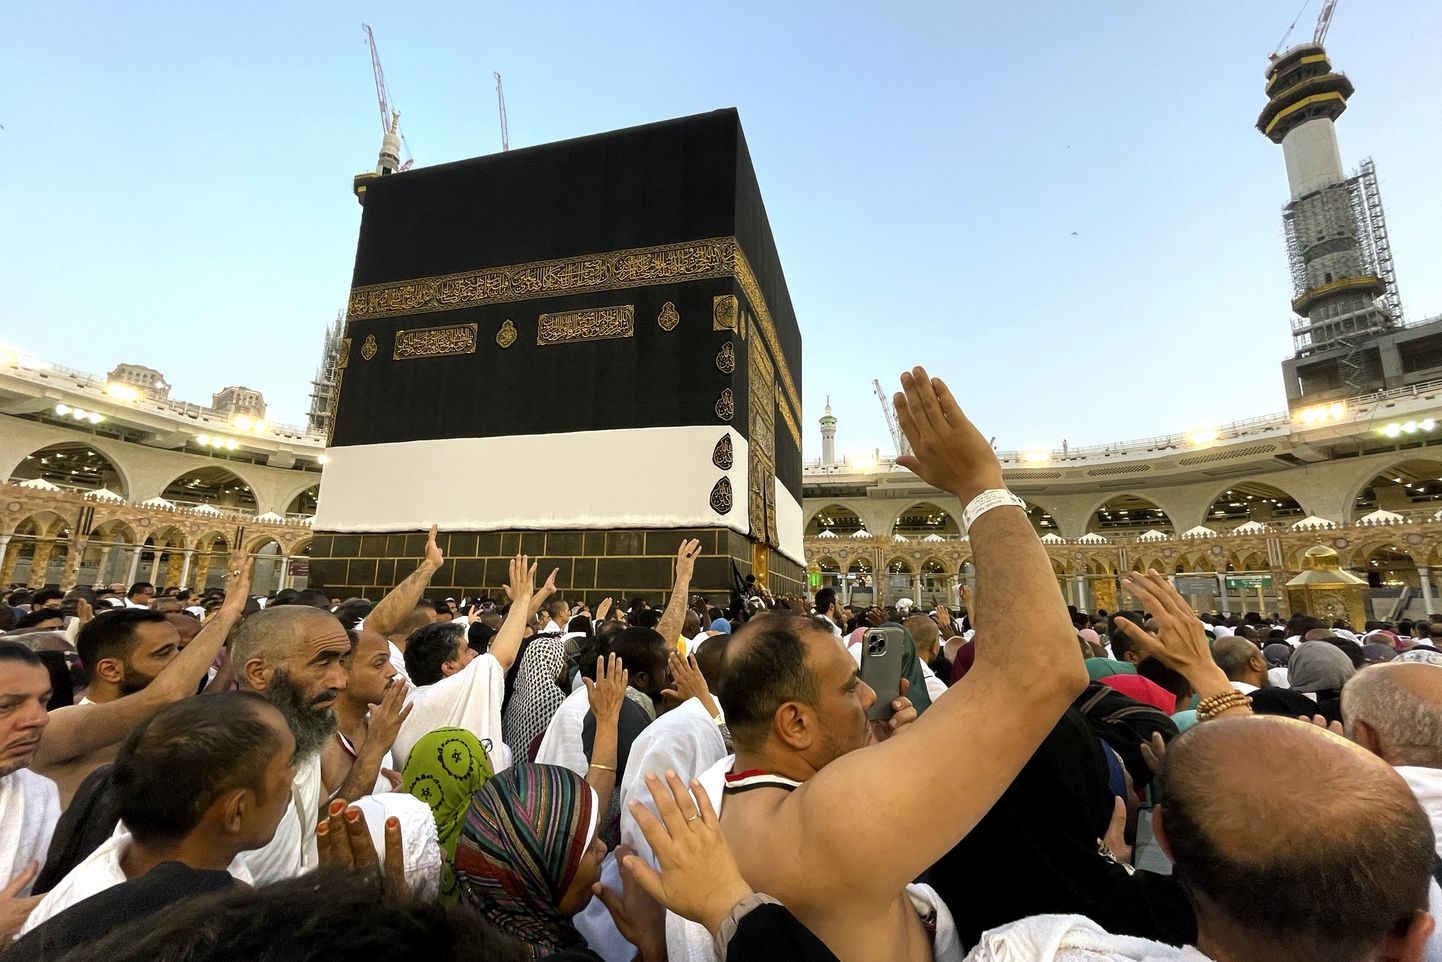 Moslemitest palverändurid liiguvad ringiratast ümber Kaaba kivi Suurmošees. Kui tavapäraselt külastavad moslemite pühimat paika Mekat Saudi Araabias igal aastal miljonid hadži palverändu ette võtvad inimesed, siis koroonapandeemia ajal piirasid saudi võimud ligipääsu märkimisväärselt. Pühapäeval, 25. juunil alanud palverännu puhul lubatakse taas inimesi suurte massidena pühapaiga juurde.